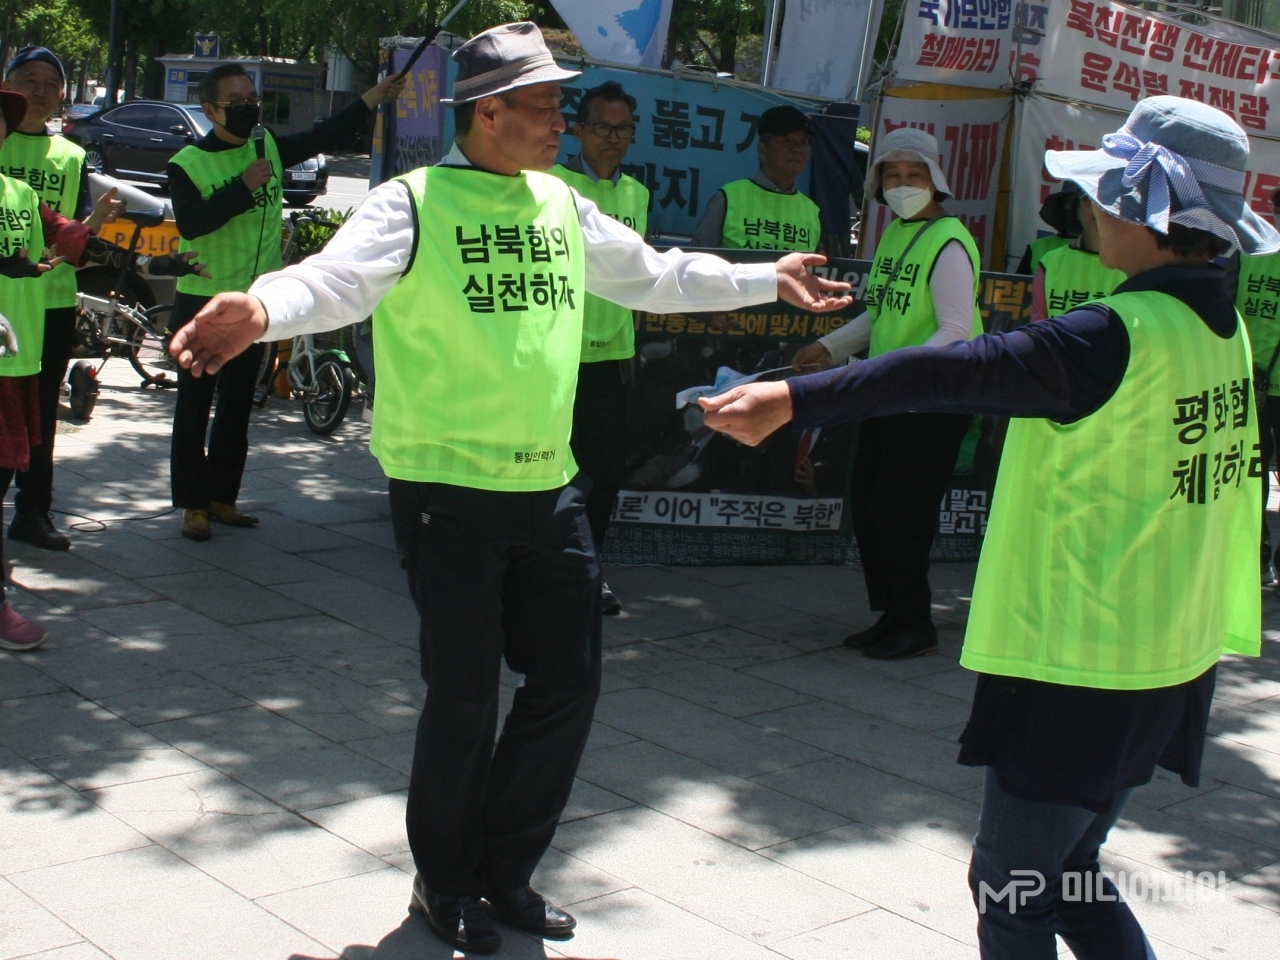 동분선 선생의 리더로 '통일춤'을 추는 참가자들. 백순길 평화협정본부 지도위원이 양팔을 옆으로 흔들며 춤을 추고 있다.